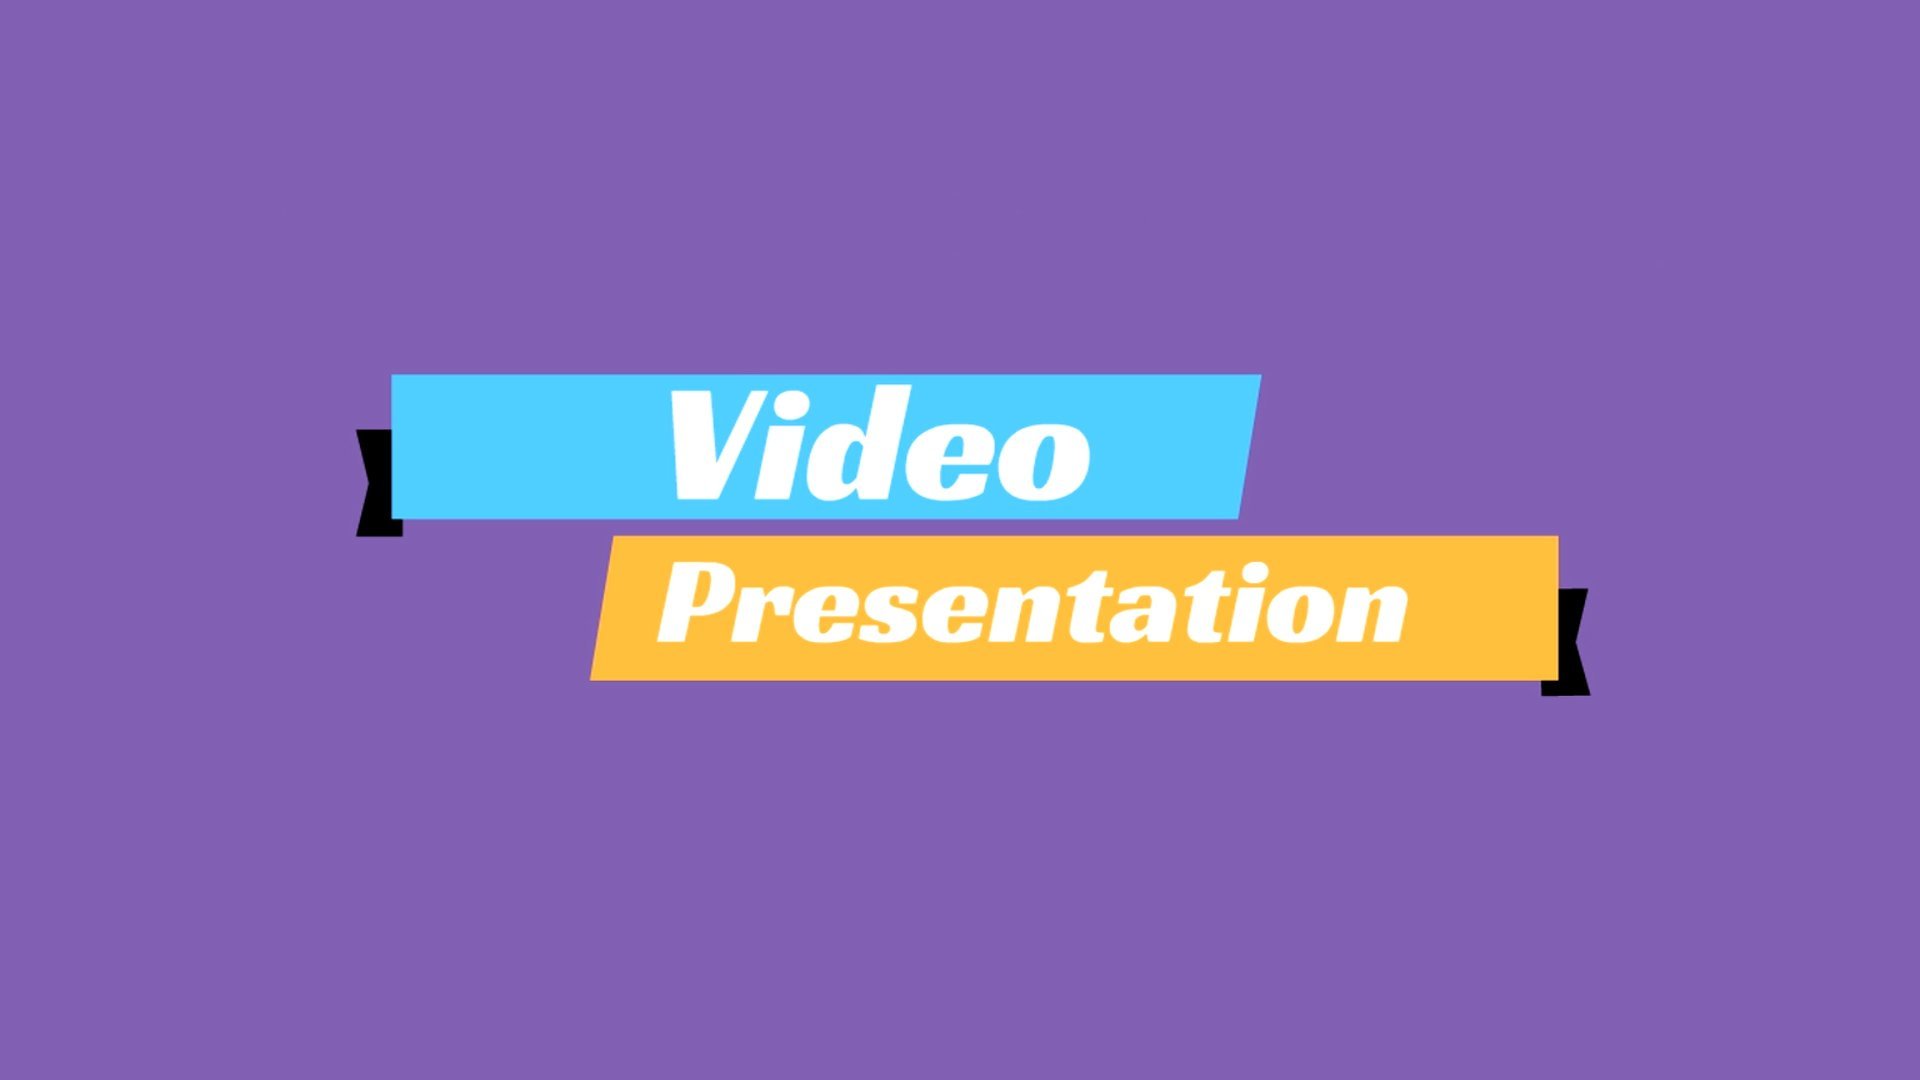 video-presentation-og-image.JPG